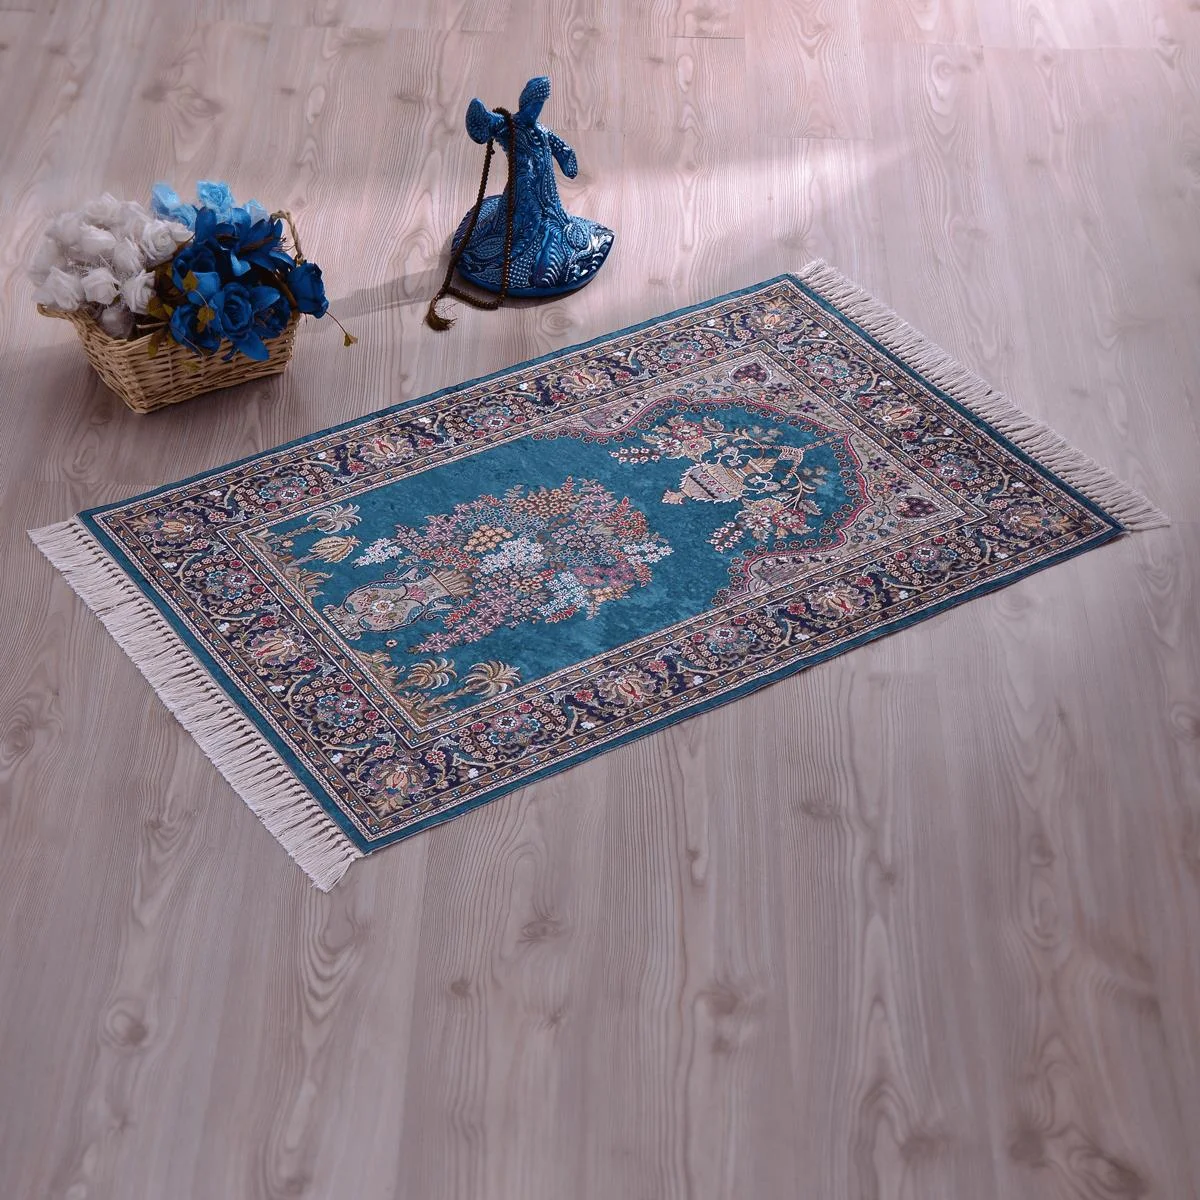 Seide Look Luxus Gebet Teppiche Muslimischen Gebet Qualität Authentische Gewebten Weichen Stoff Türkischen Teppich Fuß Sijadet Sala Tapis De Prière